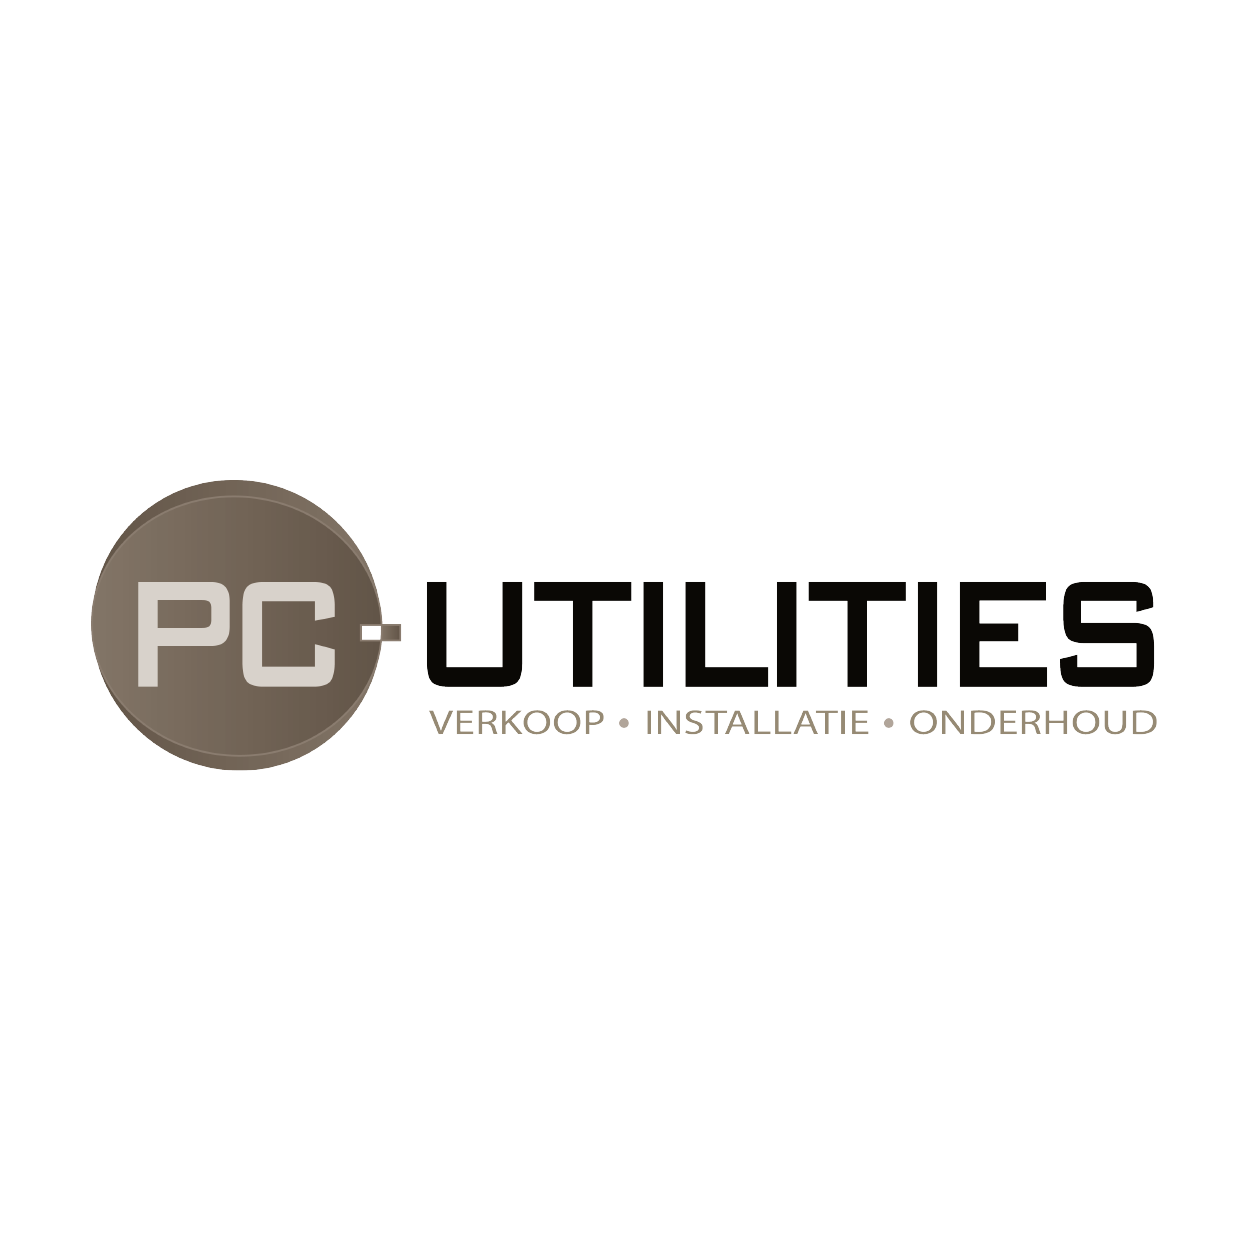 Rechter Handen Logo's Vrienden Van-_RH Logo PC Utilities